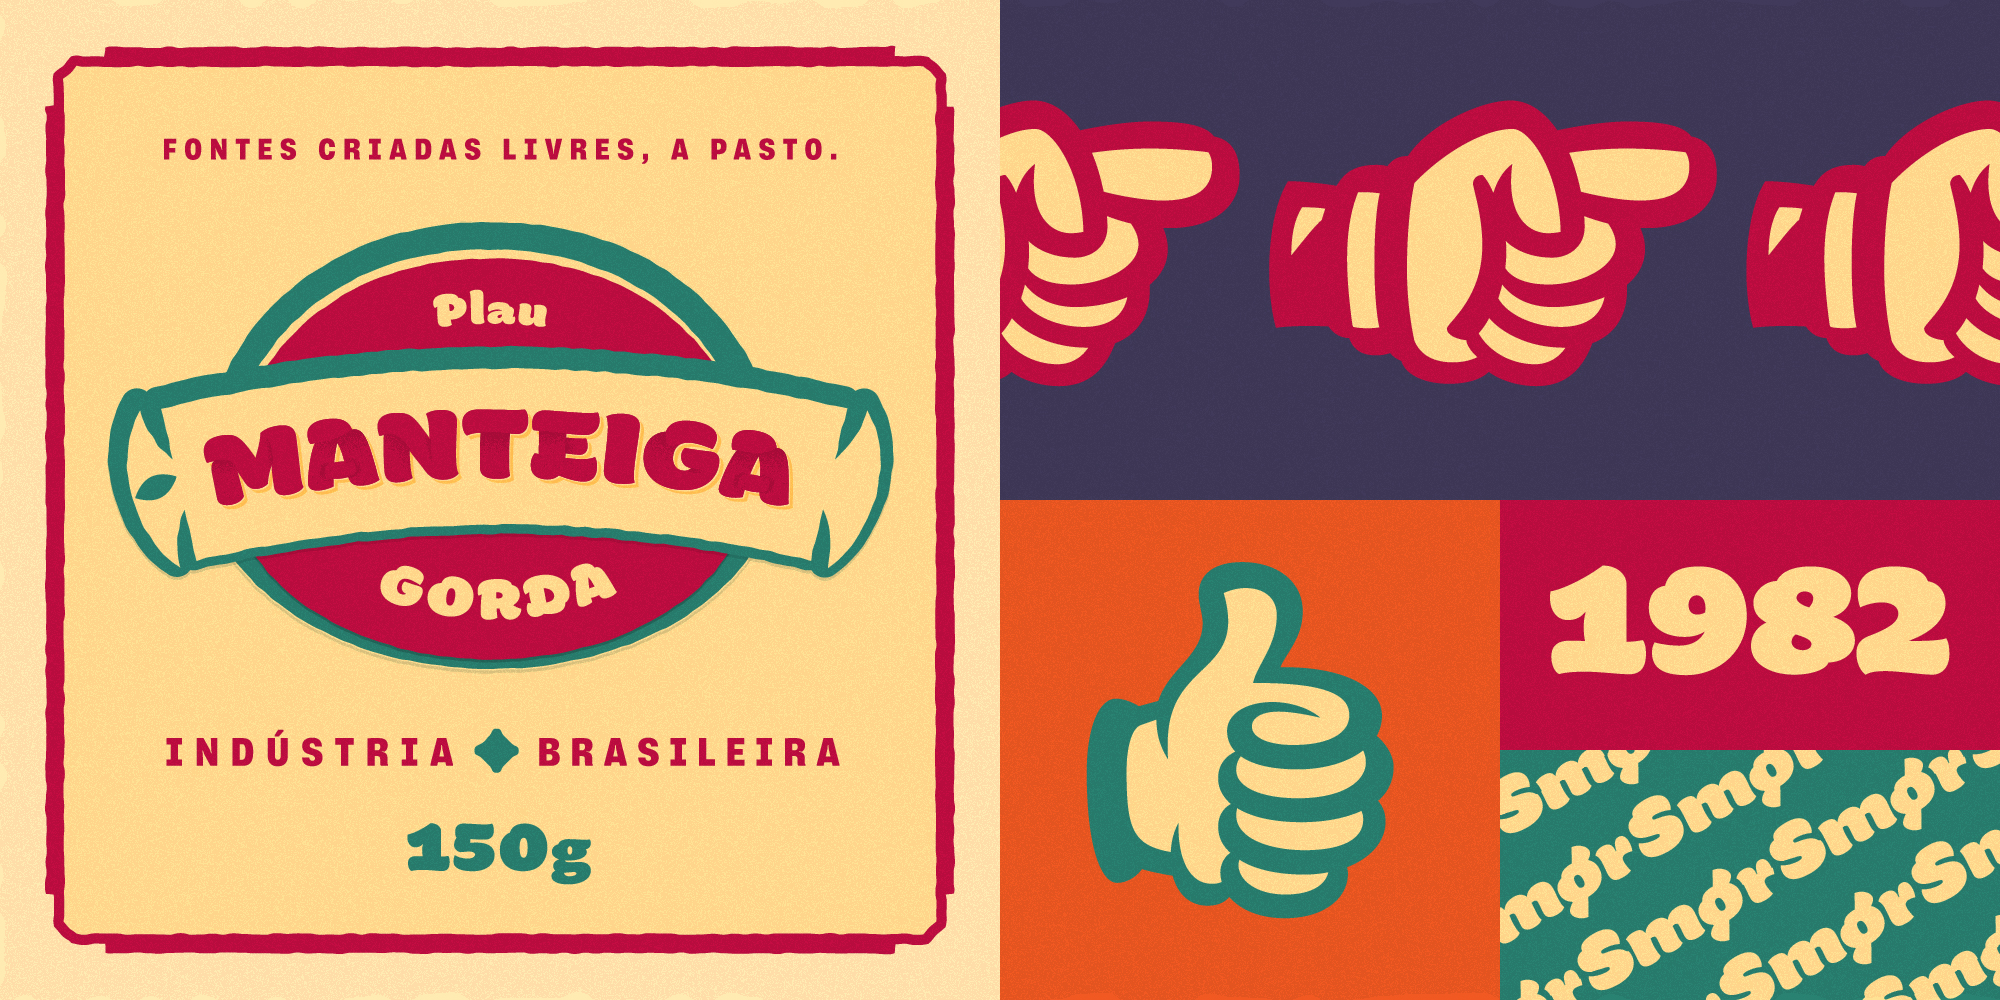 Card displaying Manteiga Gorda typeface in various styles